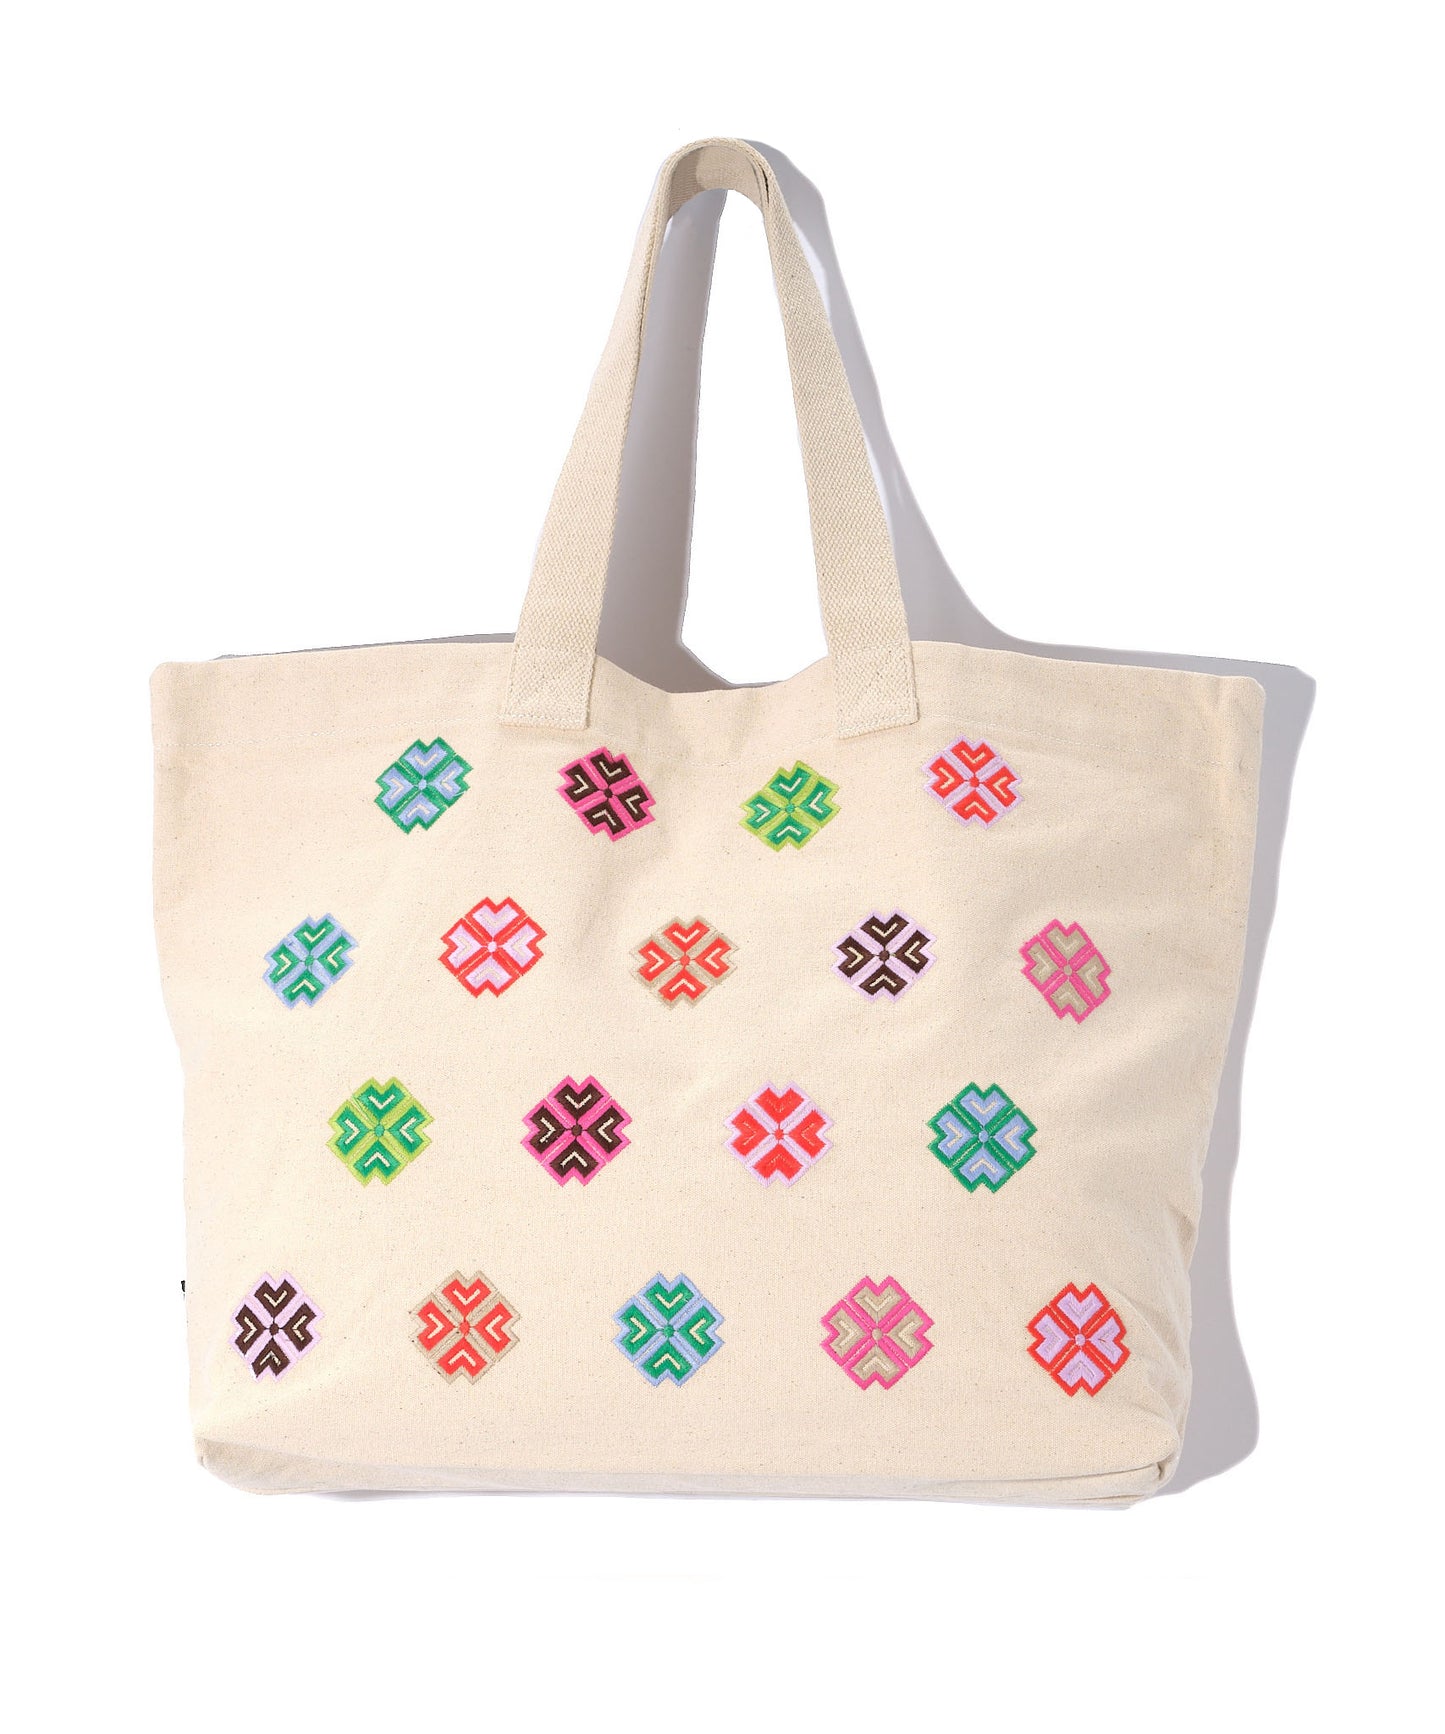 Pinwheel Tote Bag in color Cream